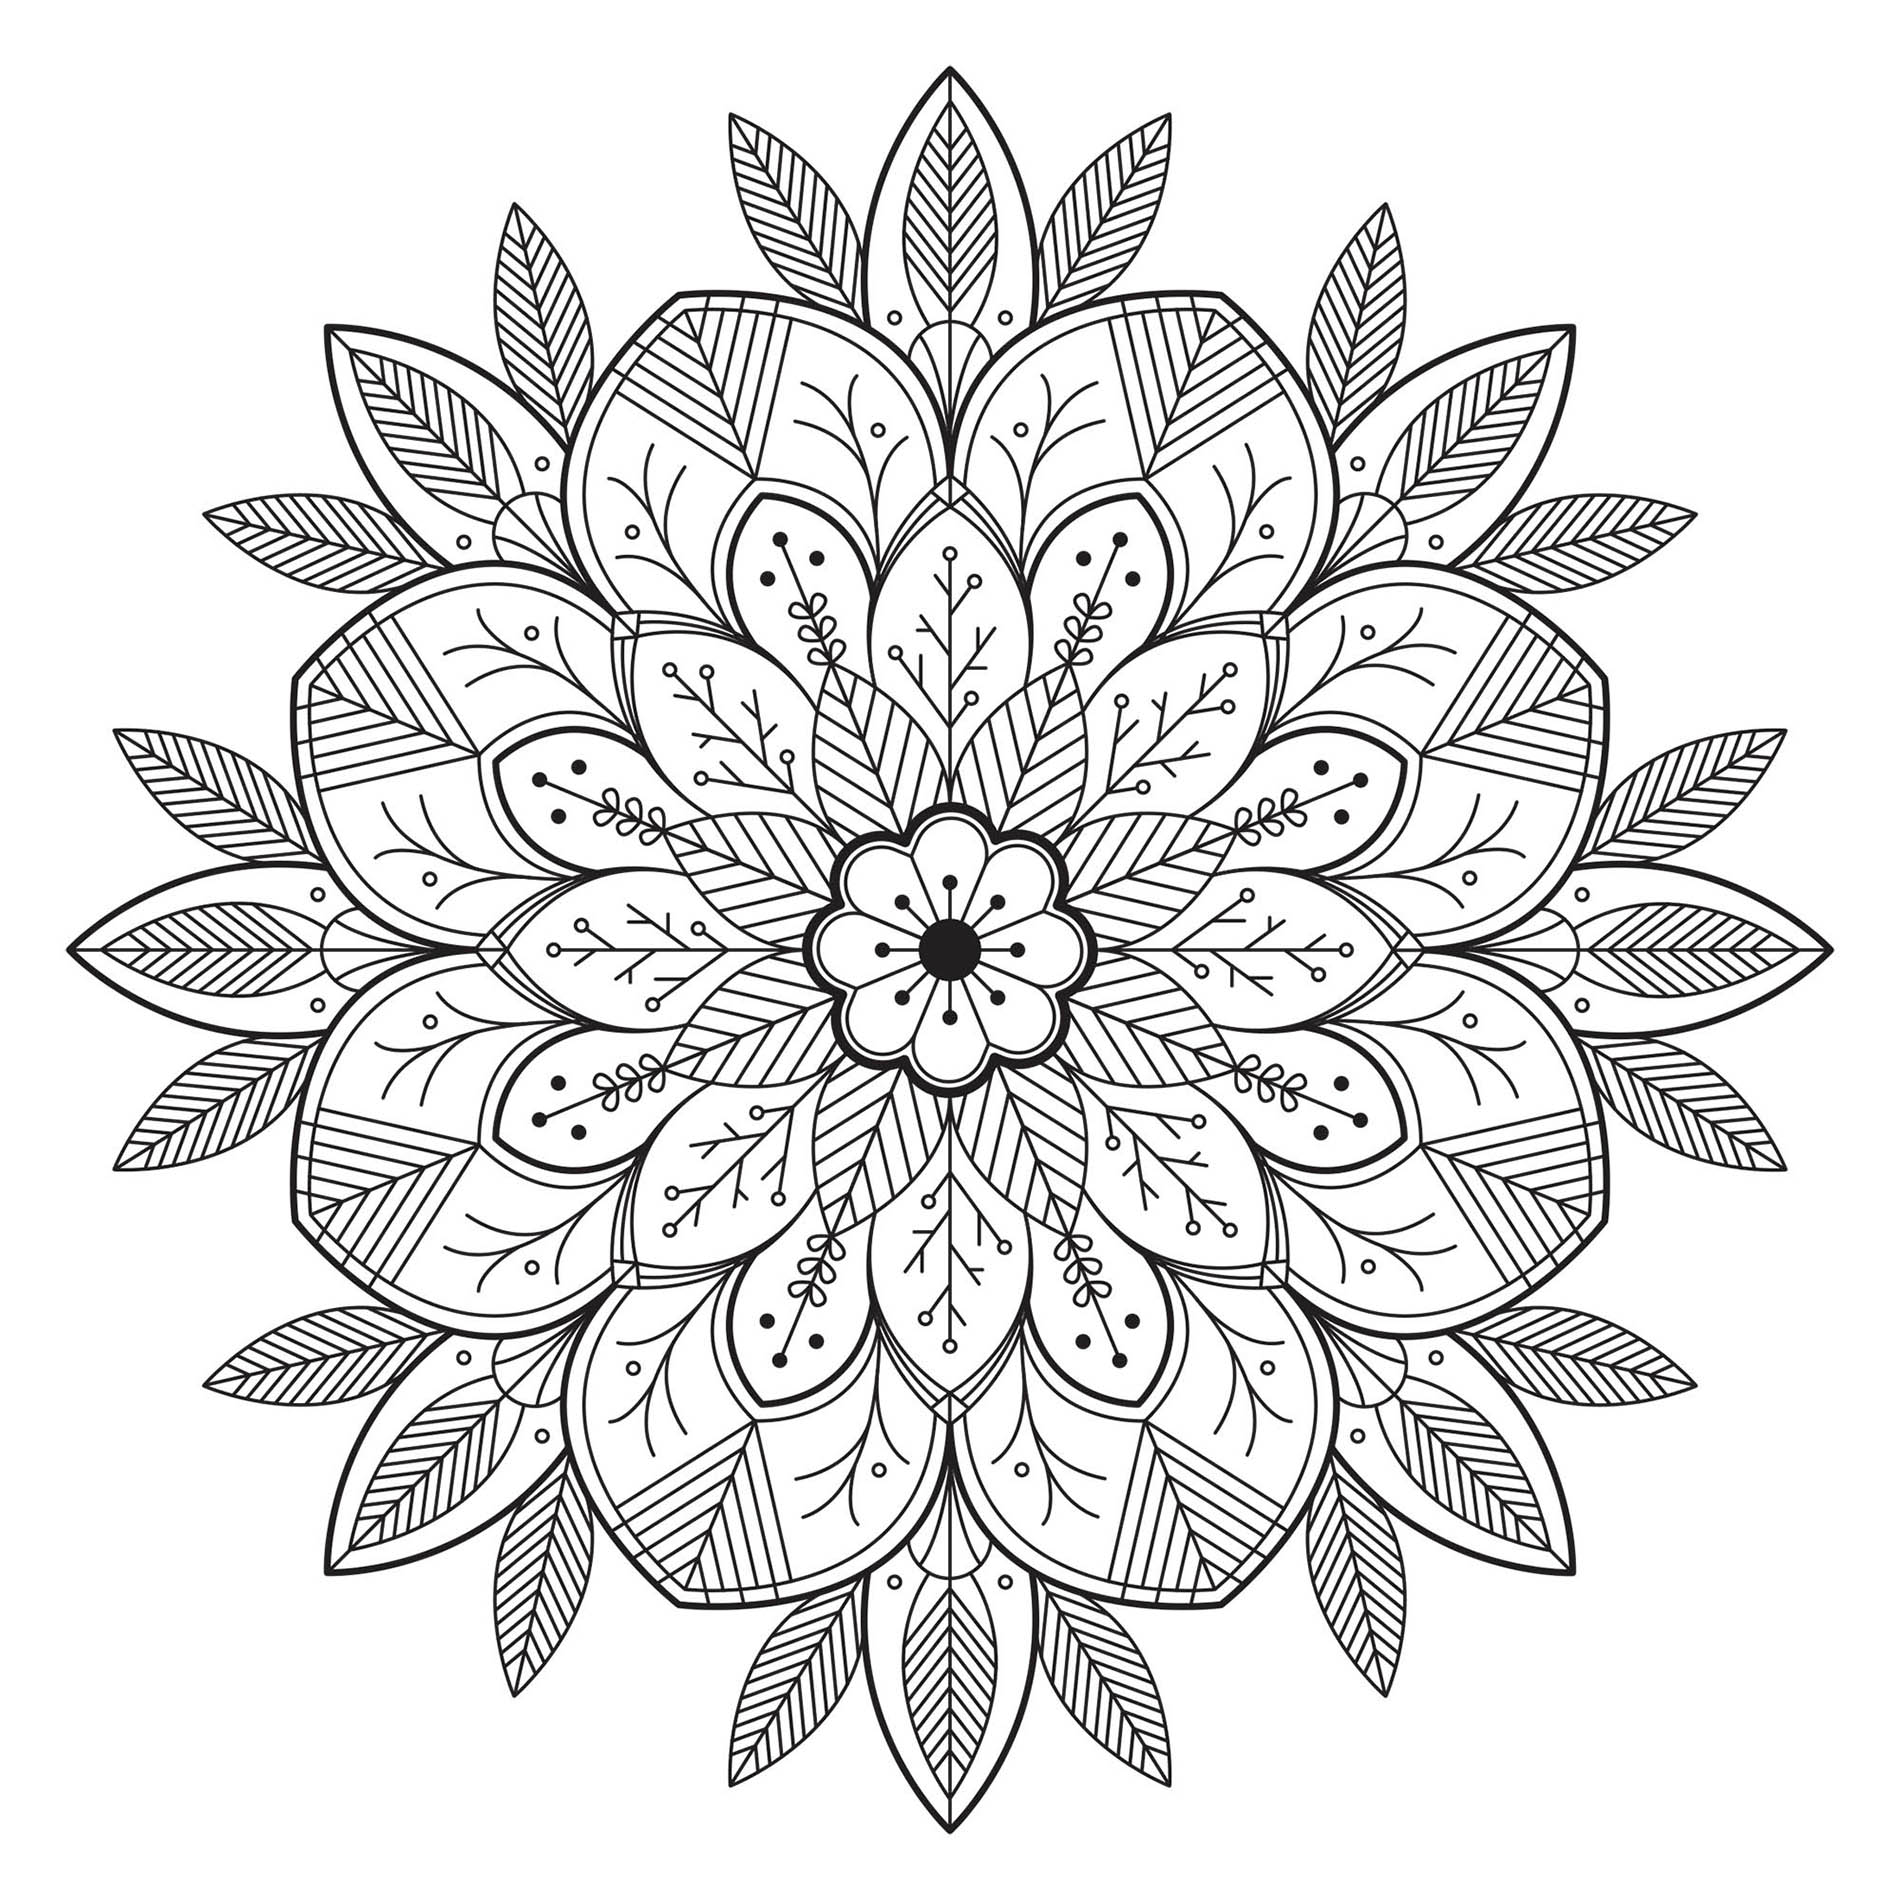 Mandala con fiori e foglie realistici. Incorporate i colori che preferite! È uno dei preferiti dai membri del sito, secondo i nostri contatori!